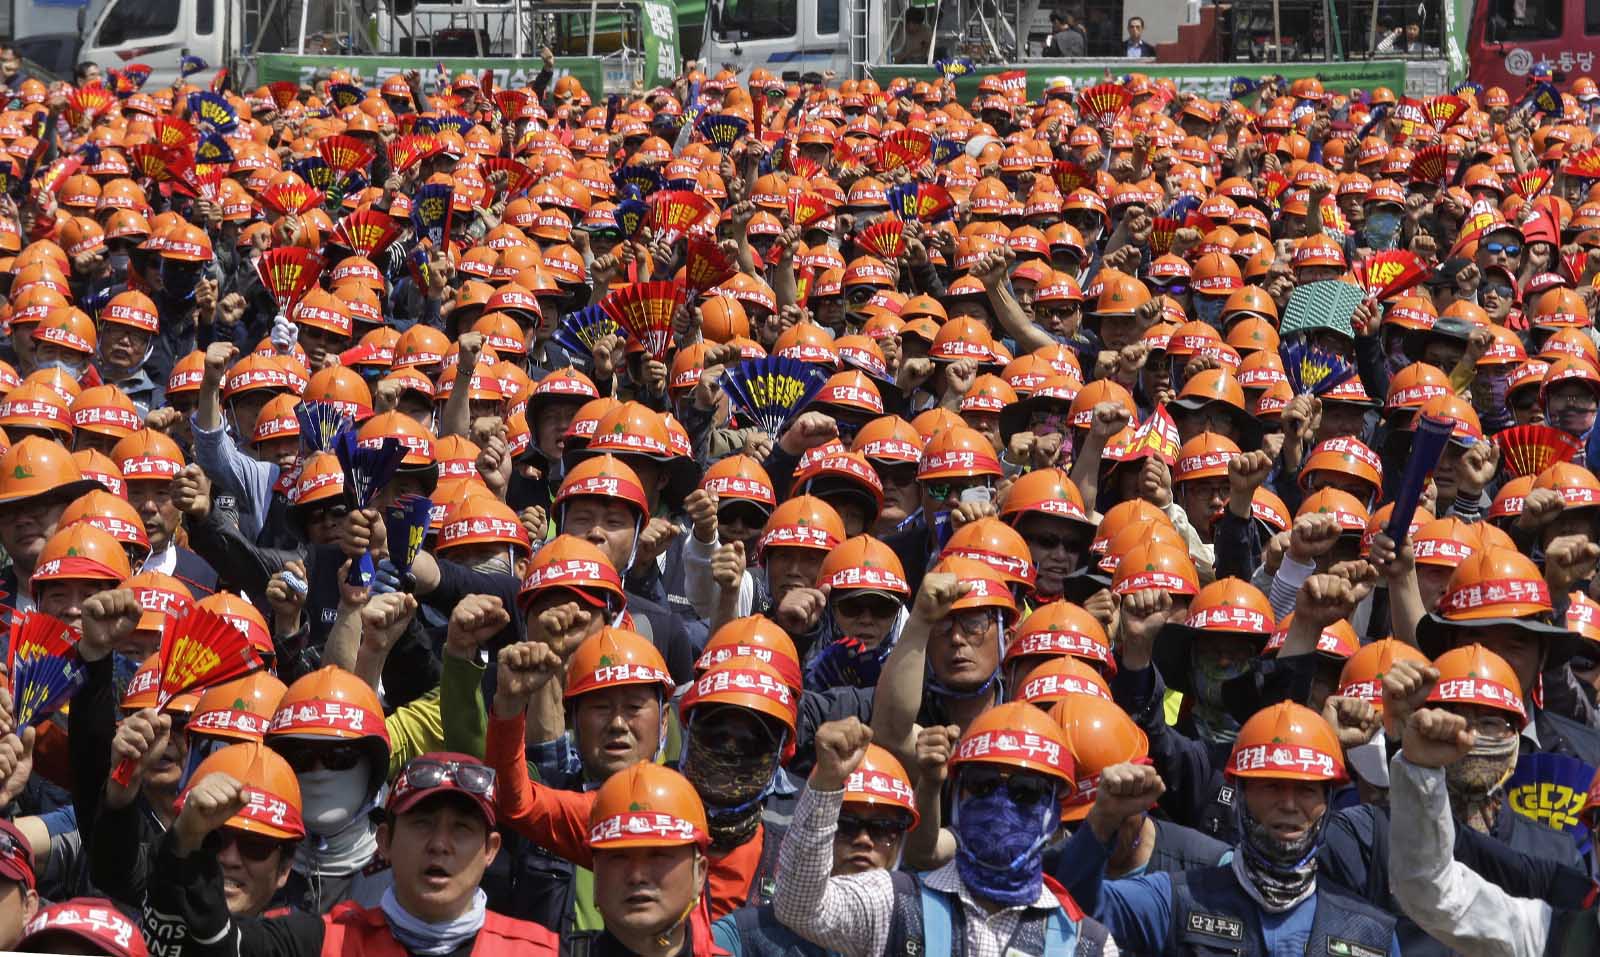 עובדים וחברי איגודים מקצועיים בצעדת אחד במאי בסיאול, דרום קוריאה(AP Photo/Ahn Young-joon)